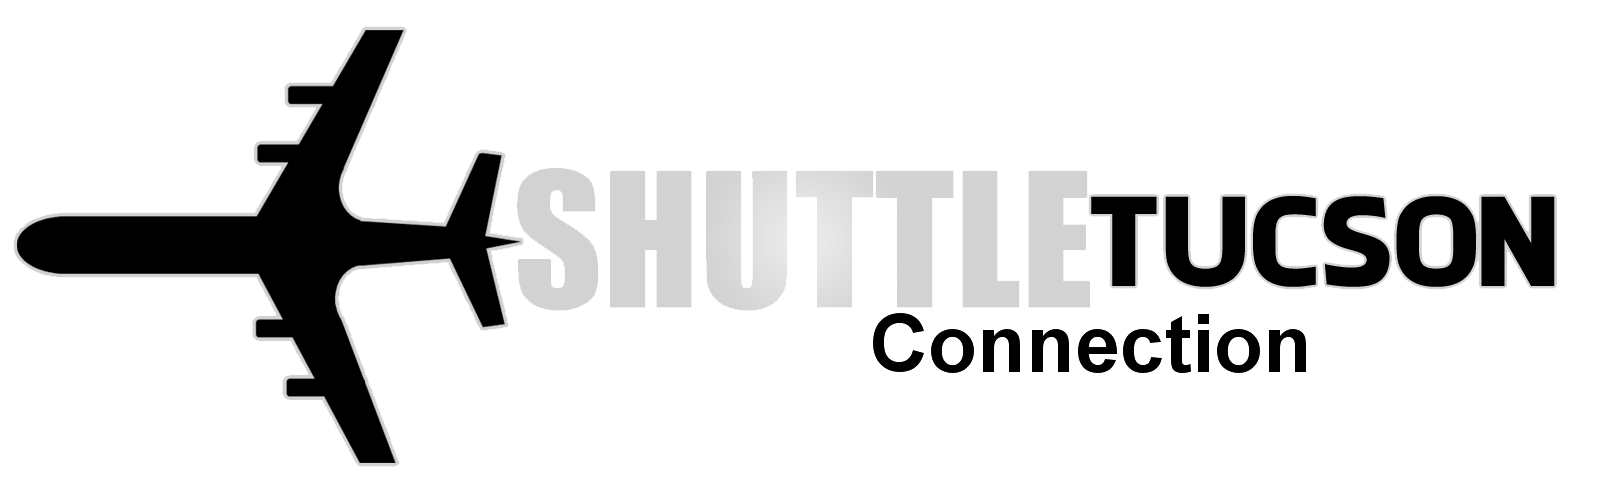 Shuttle Tucson Connection | Shuttle Service | SUV & Car Service | Tucson AZ